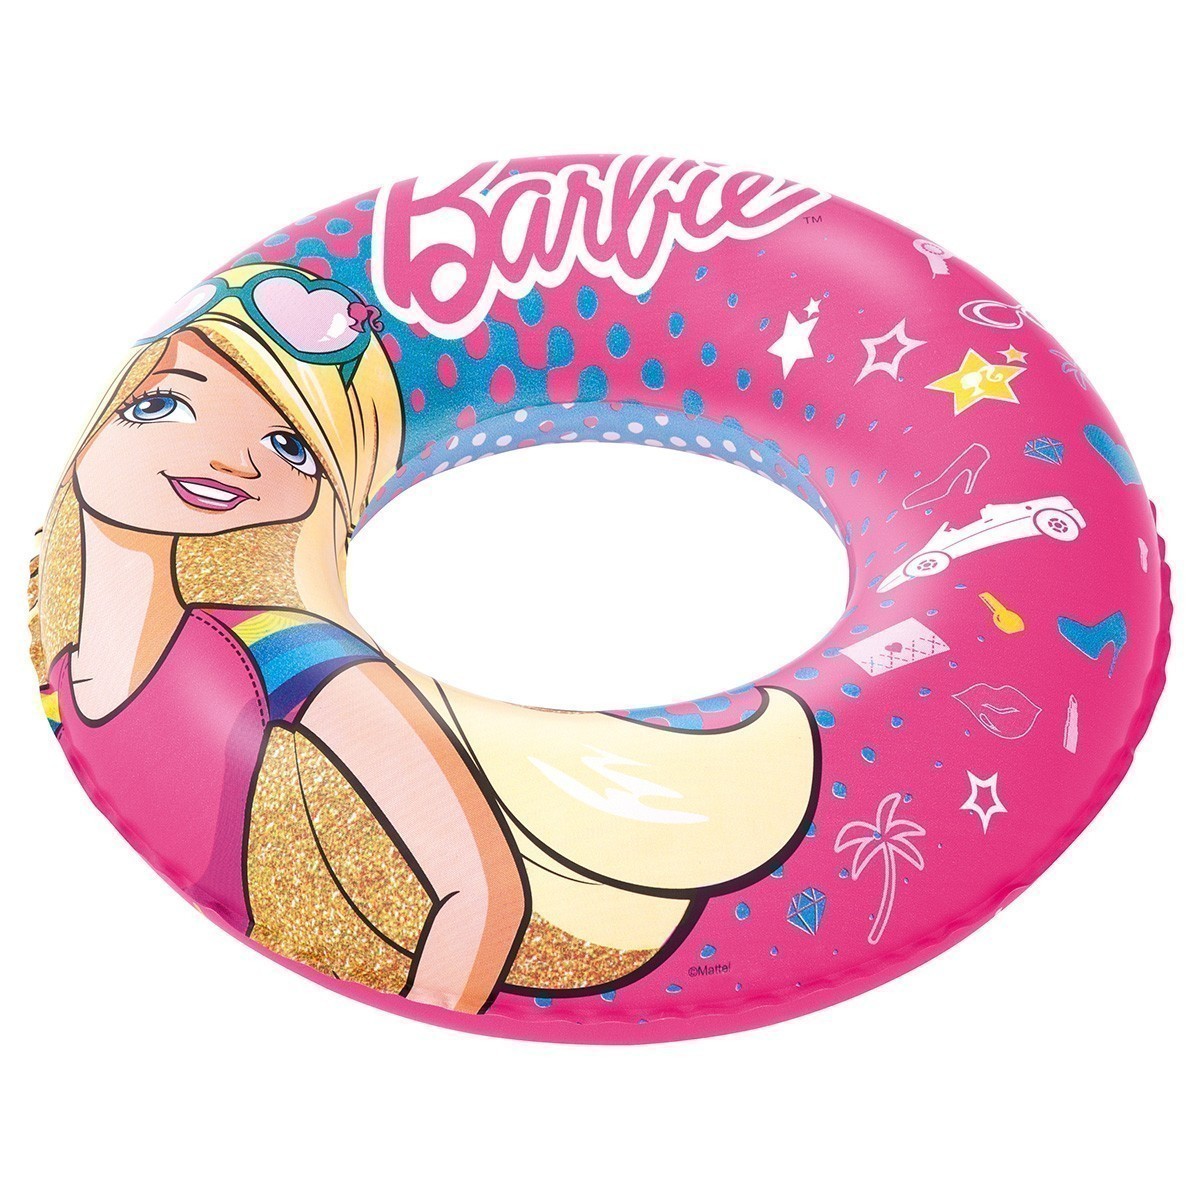 Bestway® - Barbie® Swim Ring